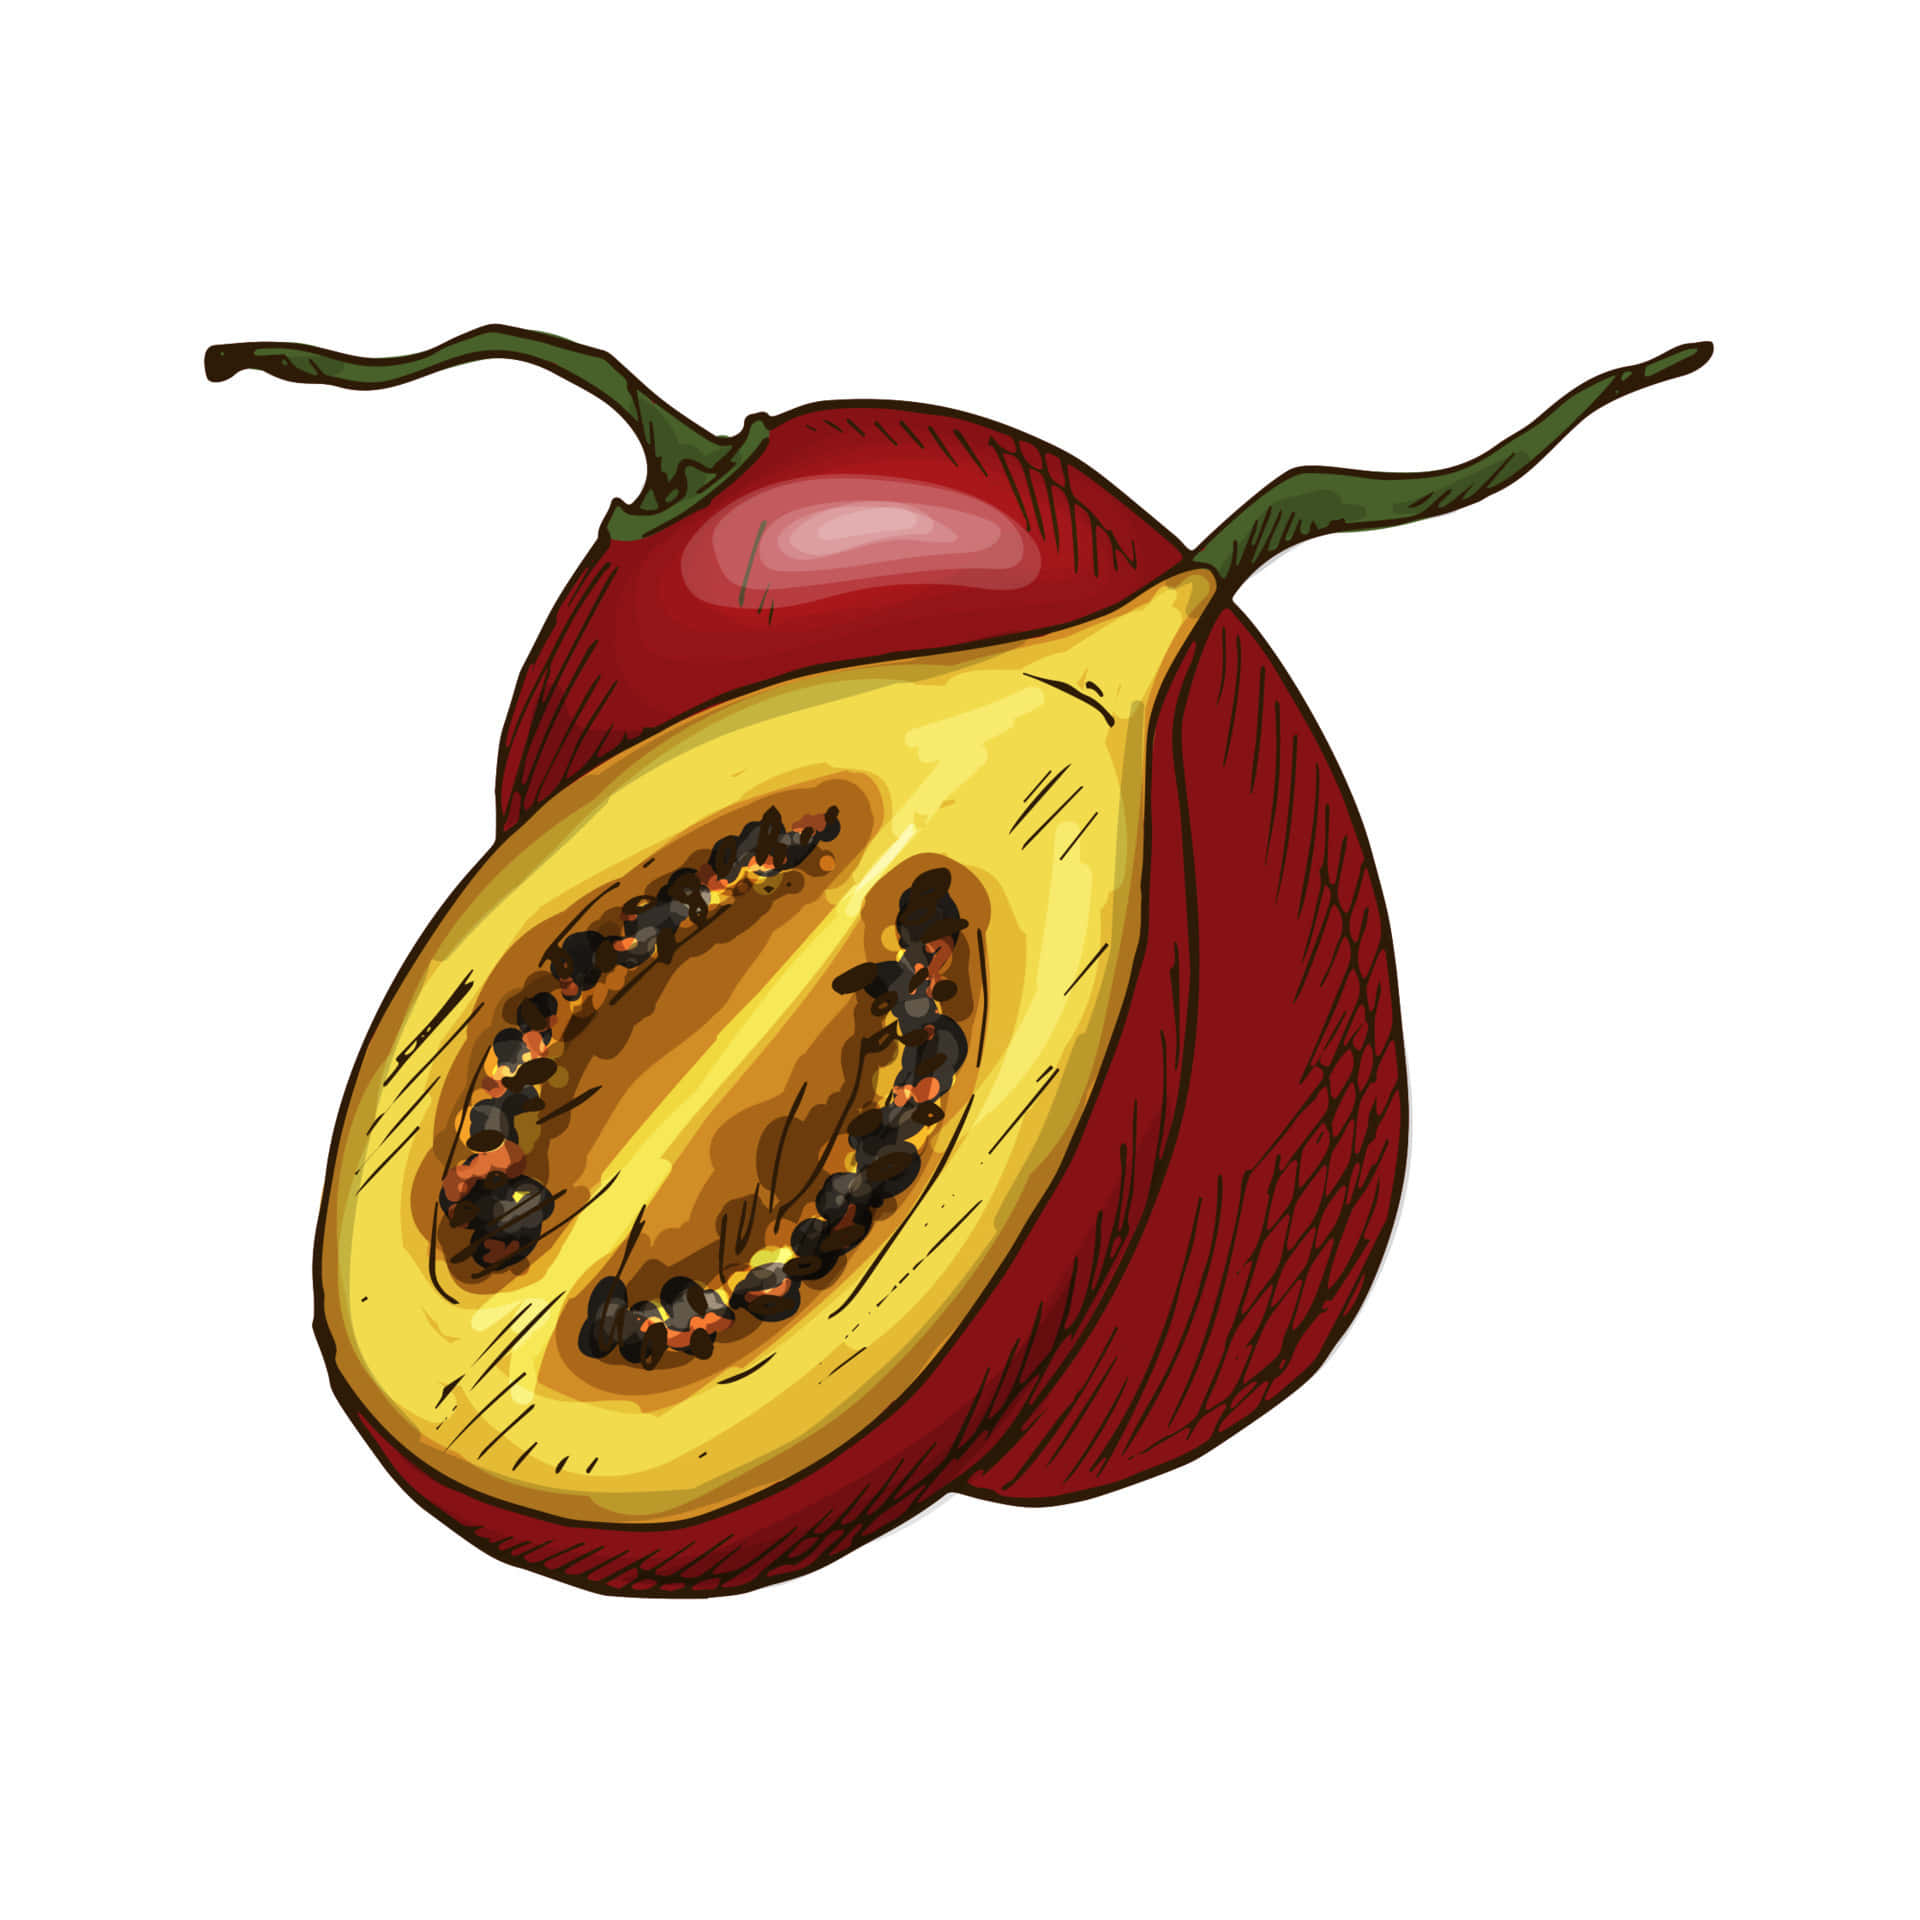 Red Tamarillo Fruit Artistic Illustration Wallpaper